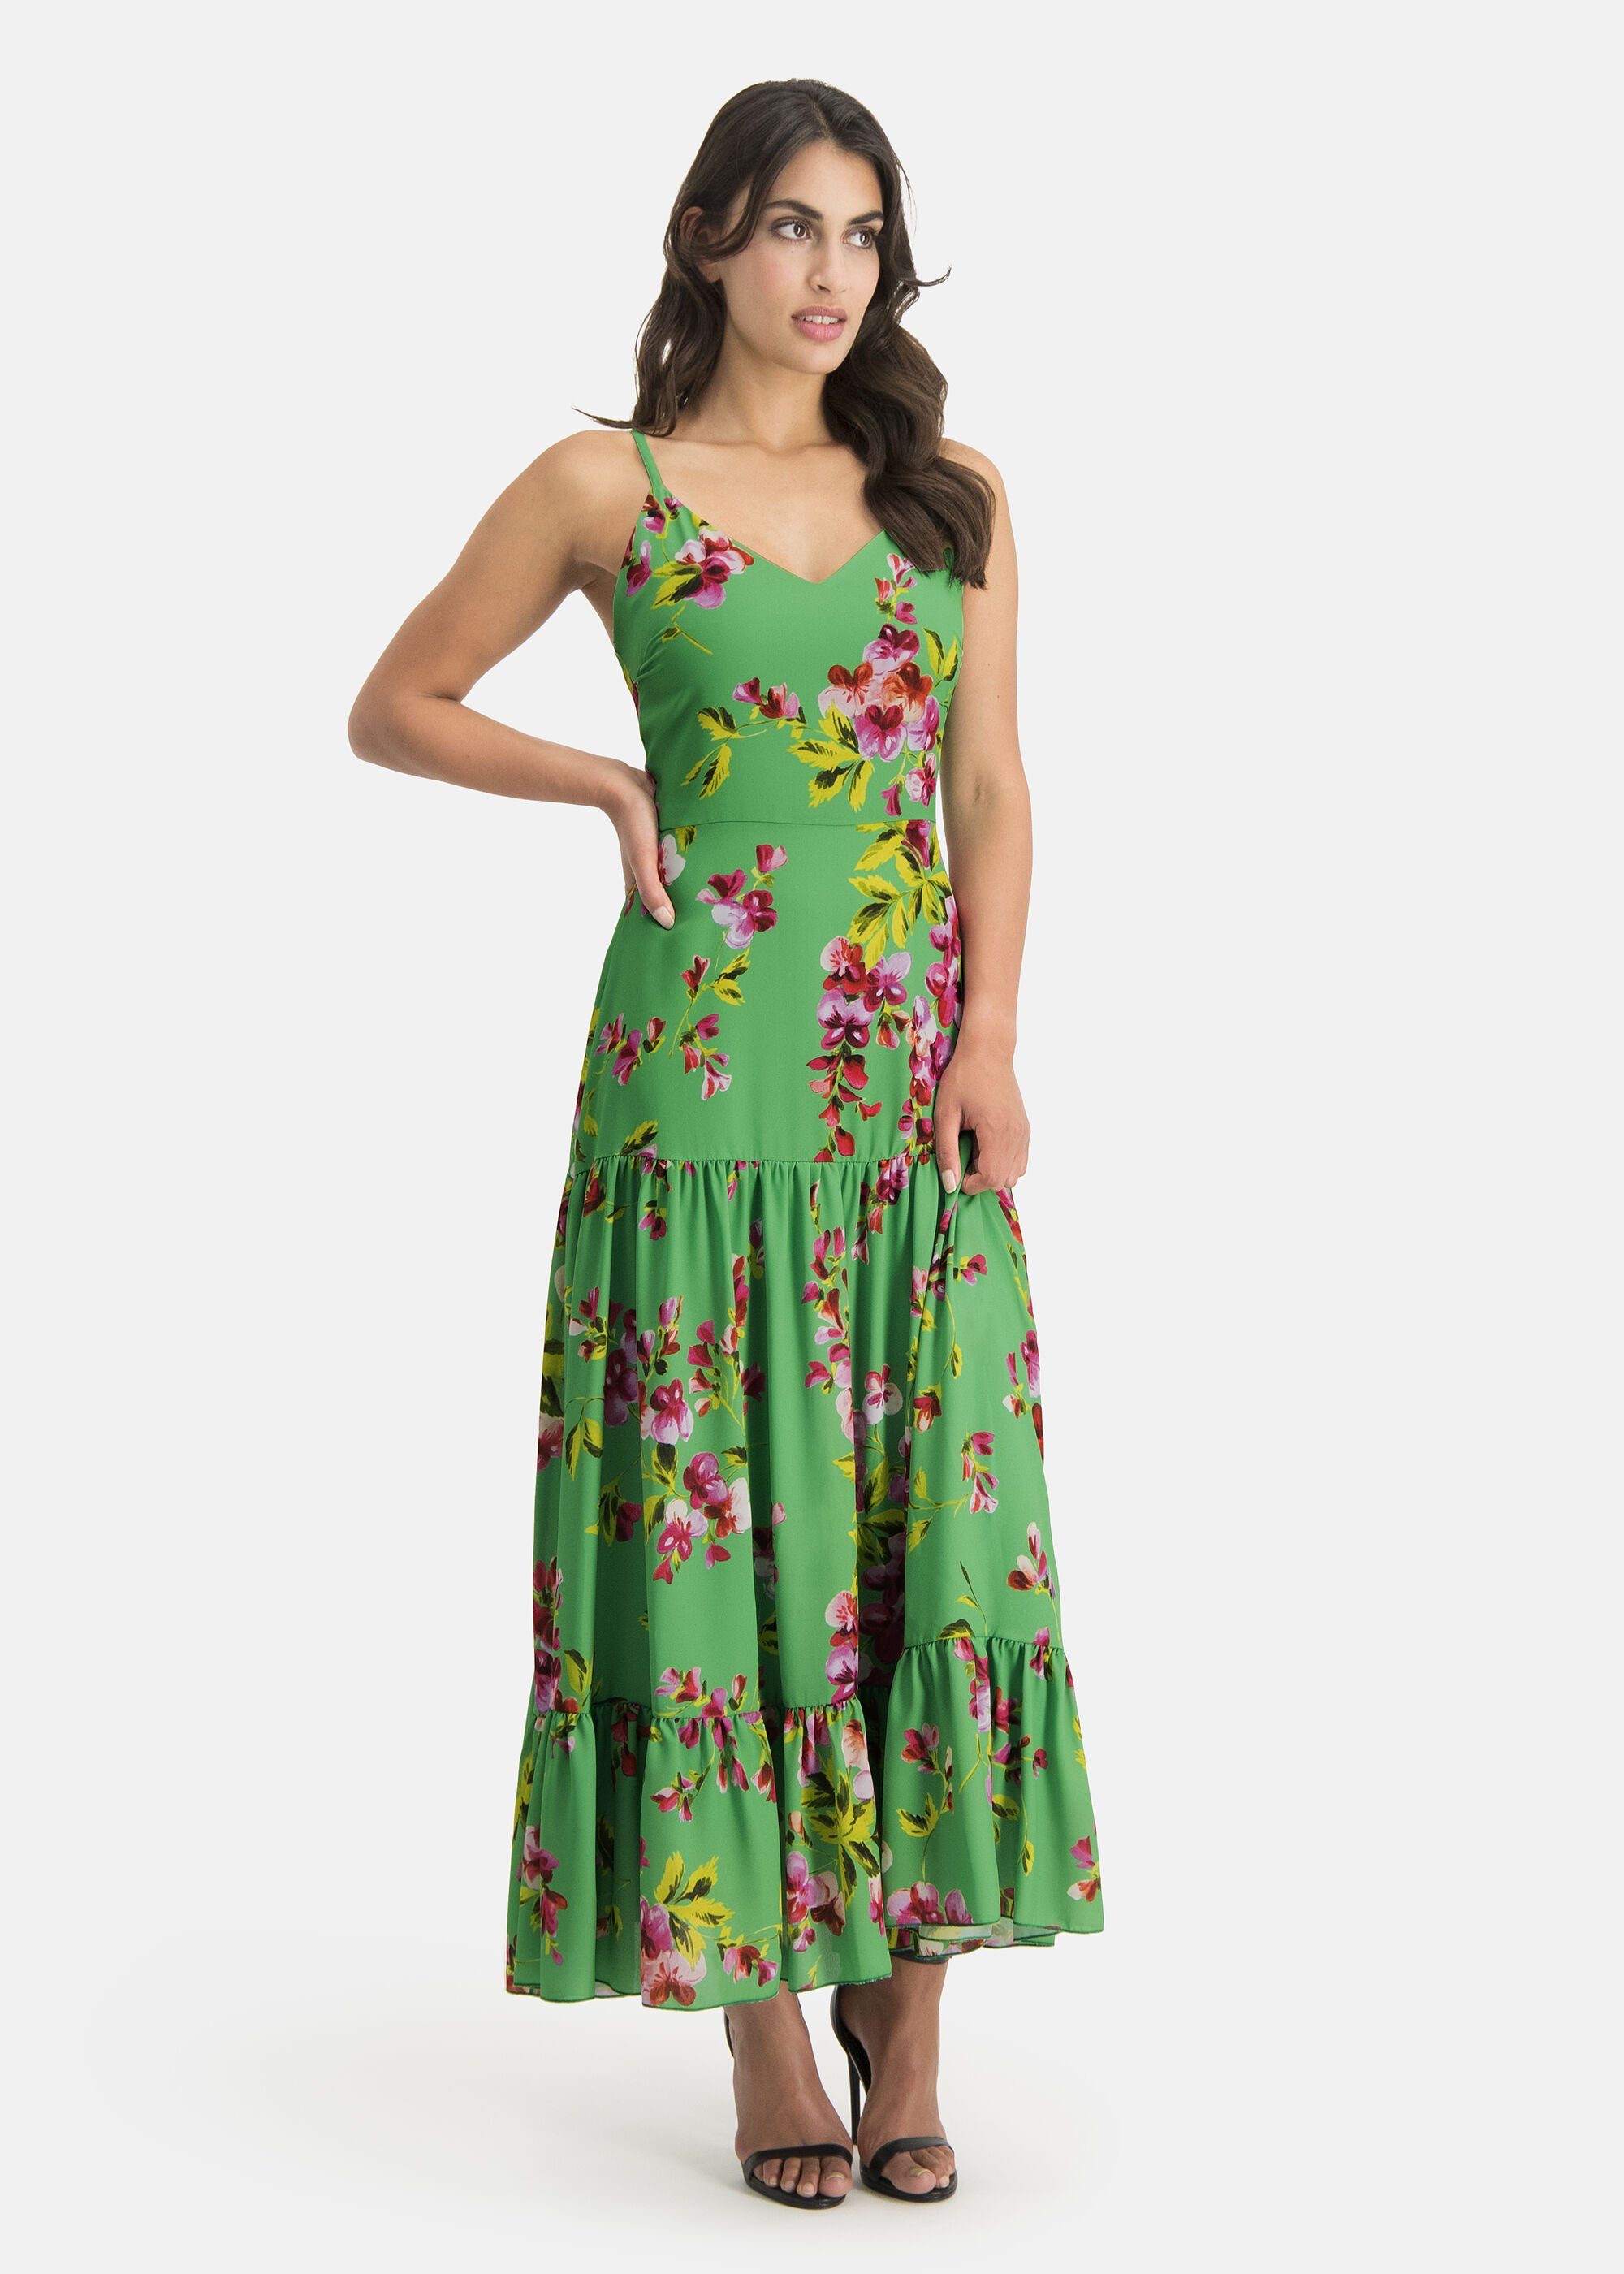 Nicowa A-Linien-Kleid BUNIWO, Hochwertiges Material italienischer Fertigung  online kaufen | OTTO